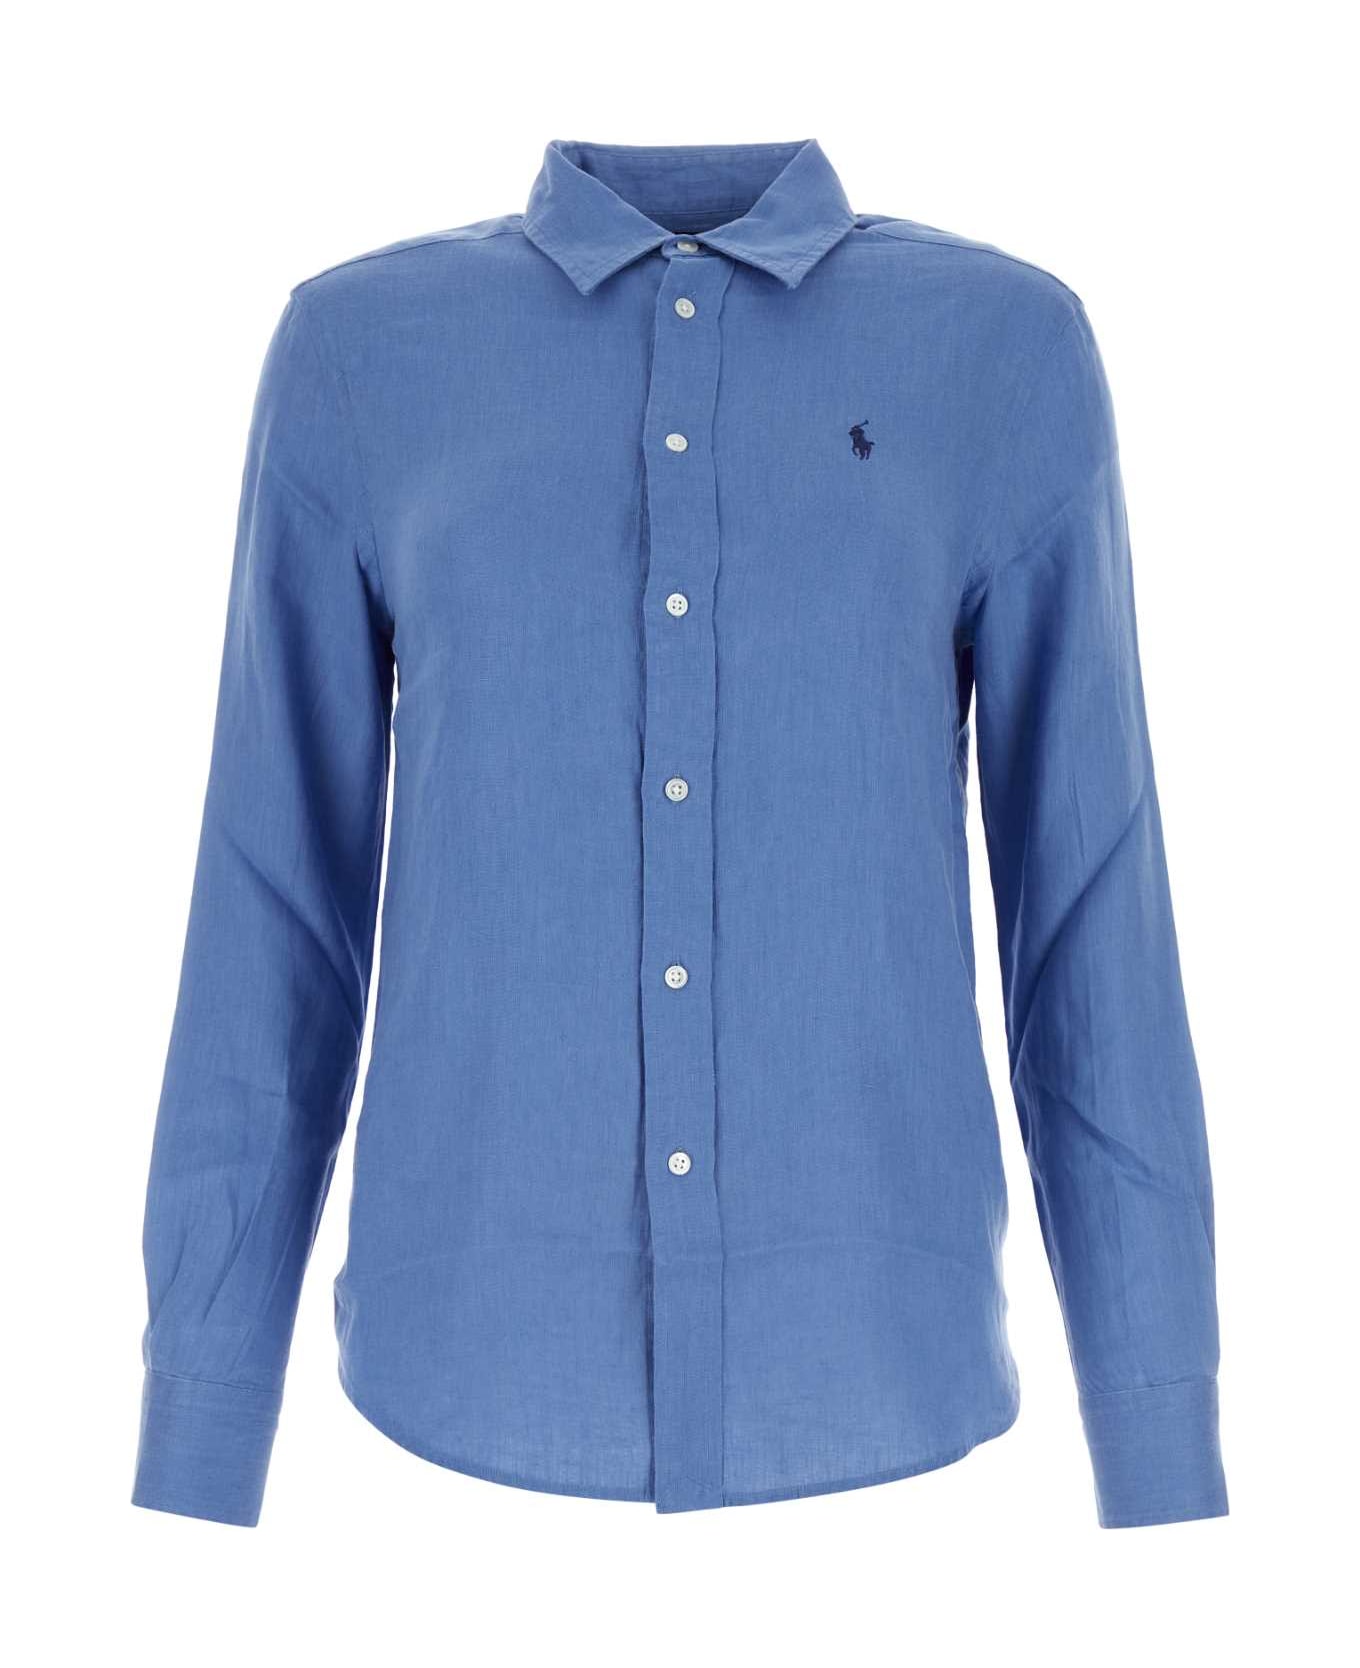 Polo Ralph Lauren Turquoise Linen Shirt - RIGBLUE シャツ